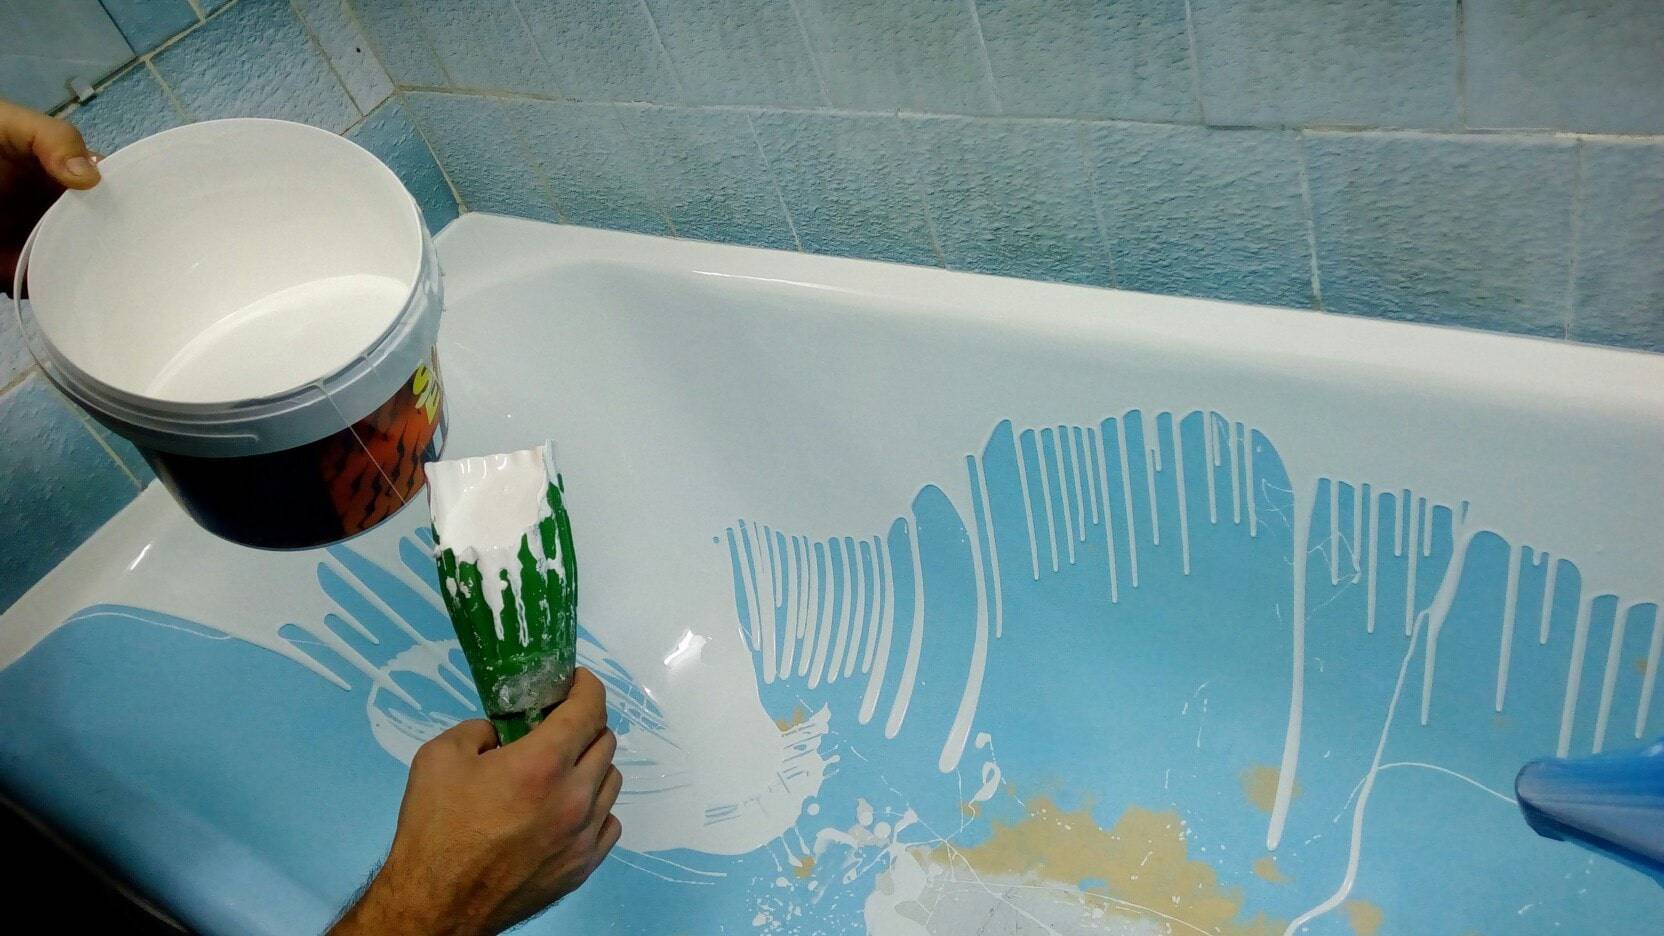 Реставрация ванны эмалью своими руками, удаление ржавчины